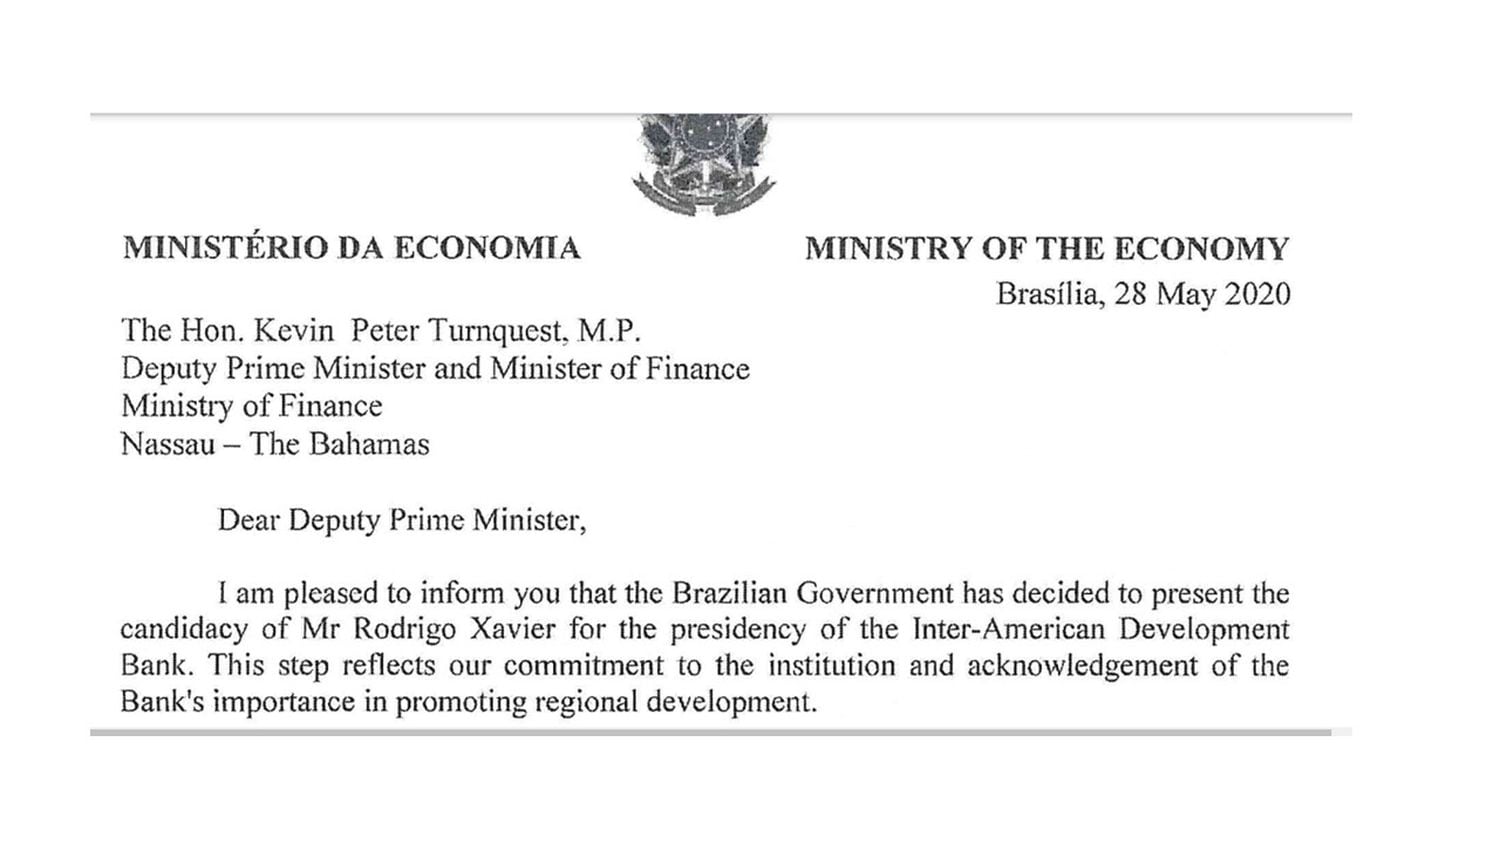 Trecho de documento do Ministério da Economia, assinado pelo ministro Paulo Guedes, para o ministro das Finanças de Bahamas. Na carta, ele diz que o Brasil decidiu apresentar a candidatura de Rodrigo Xavier para o BID.